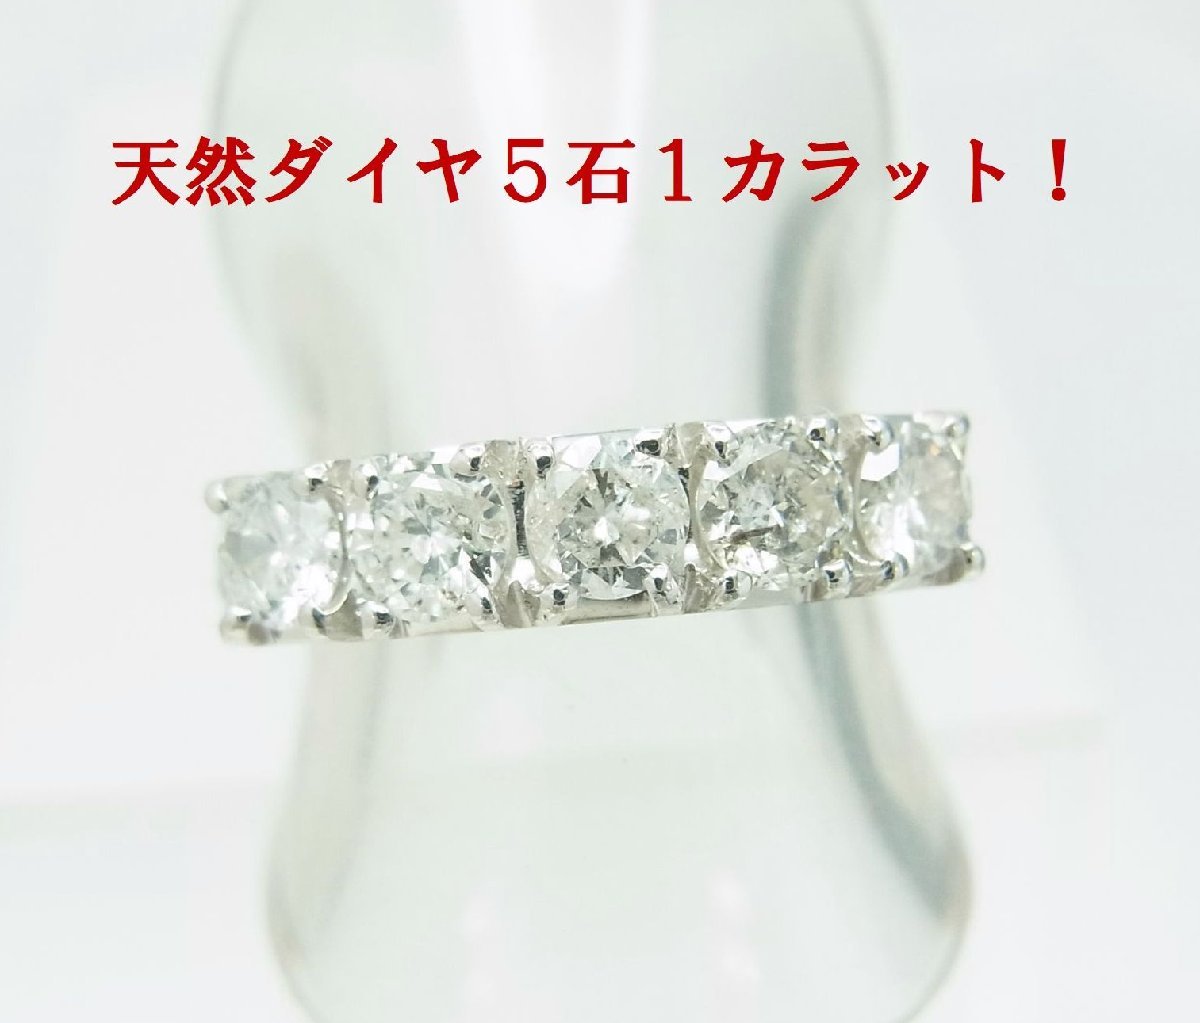 特別価格 １２万円ポッキリ ５石合計1.02ct 上質天然ダイヤモンド プラチナリング 商品動画 送料込